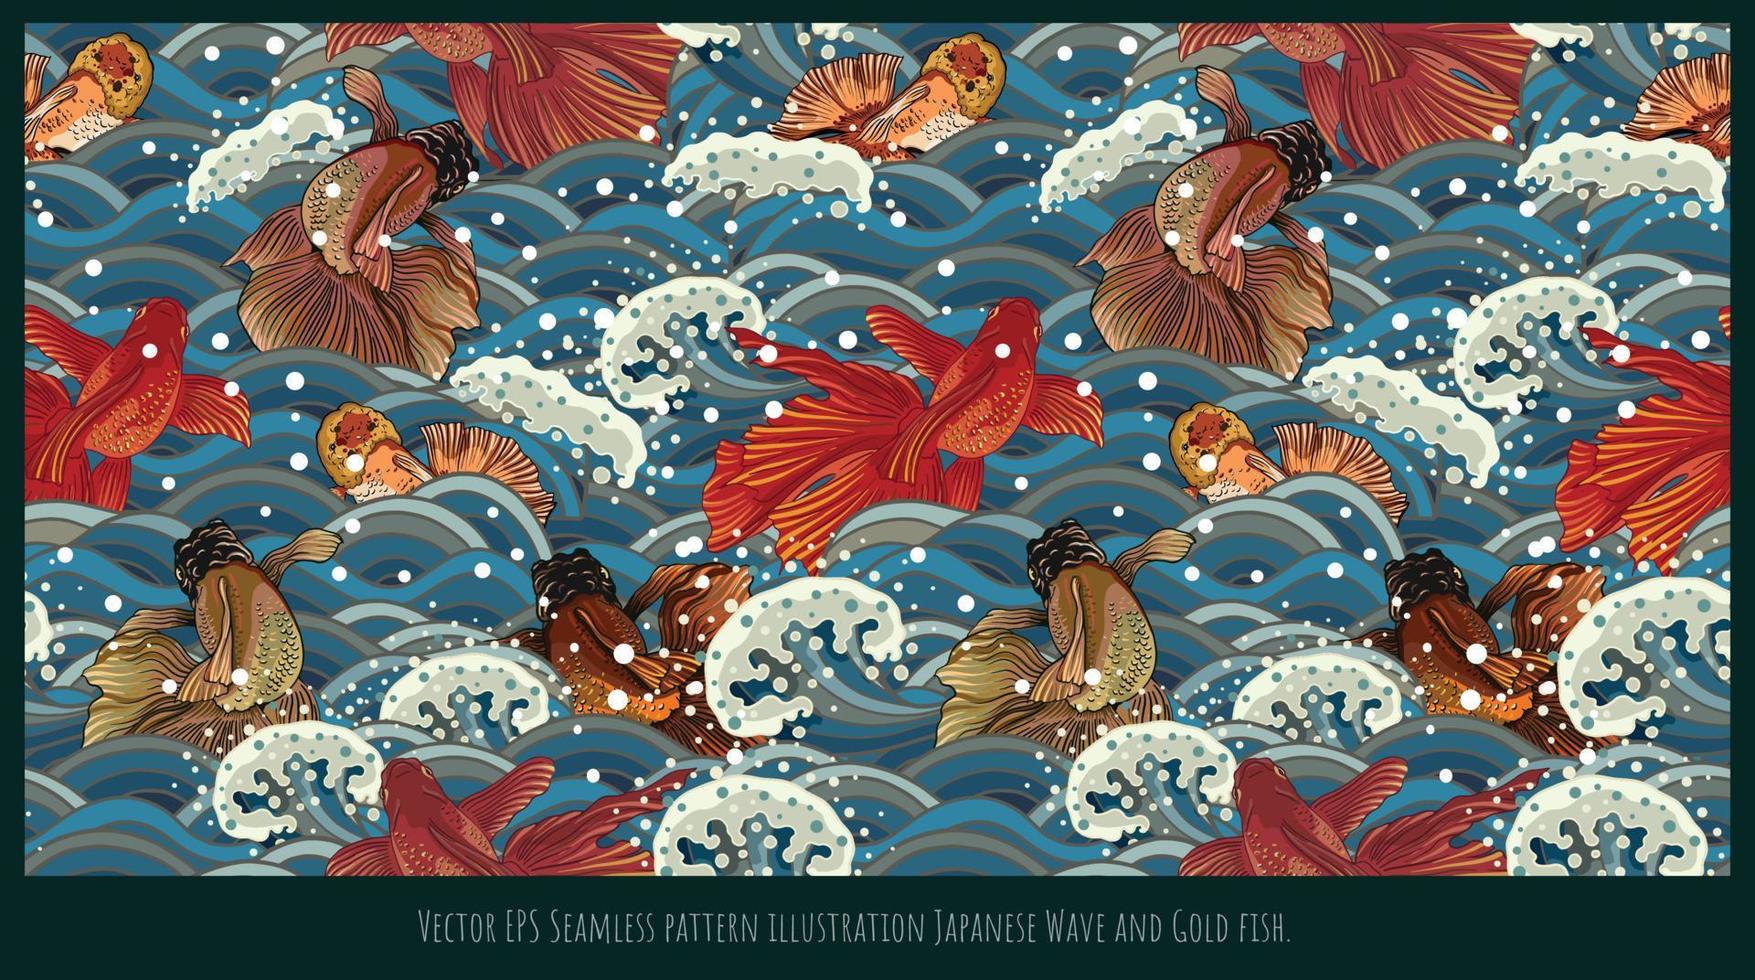 vector eps ilustración de patrones sin fisuras ola japonesa y peces dorados